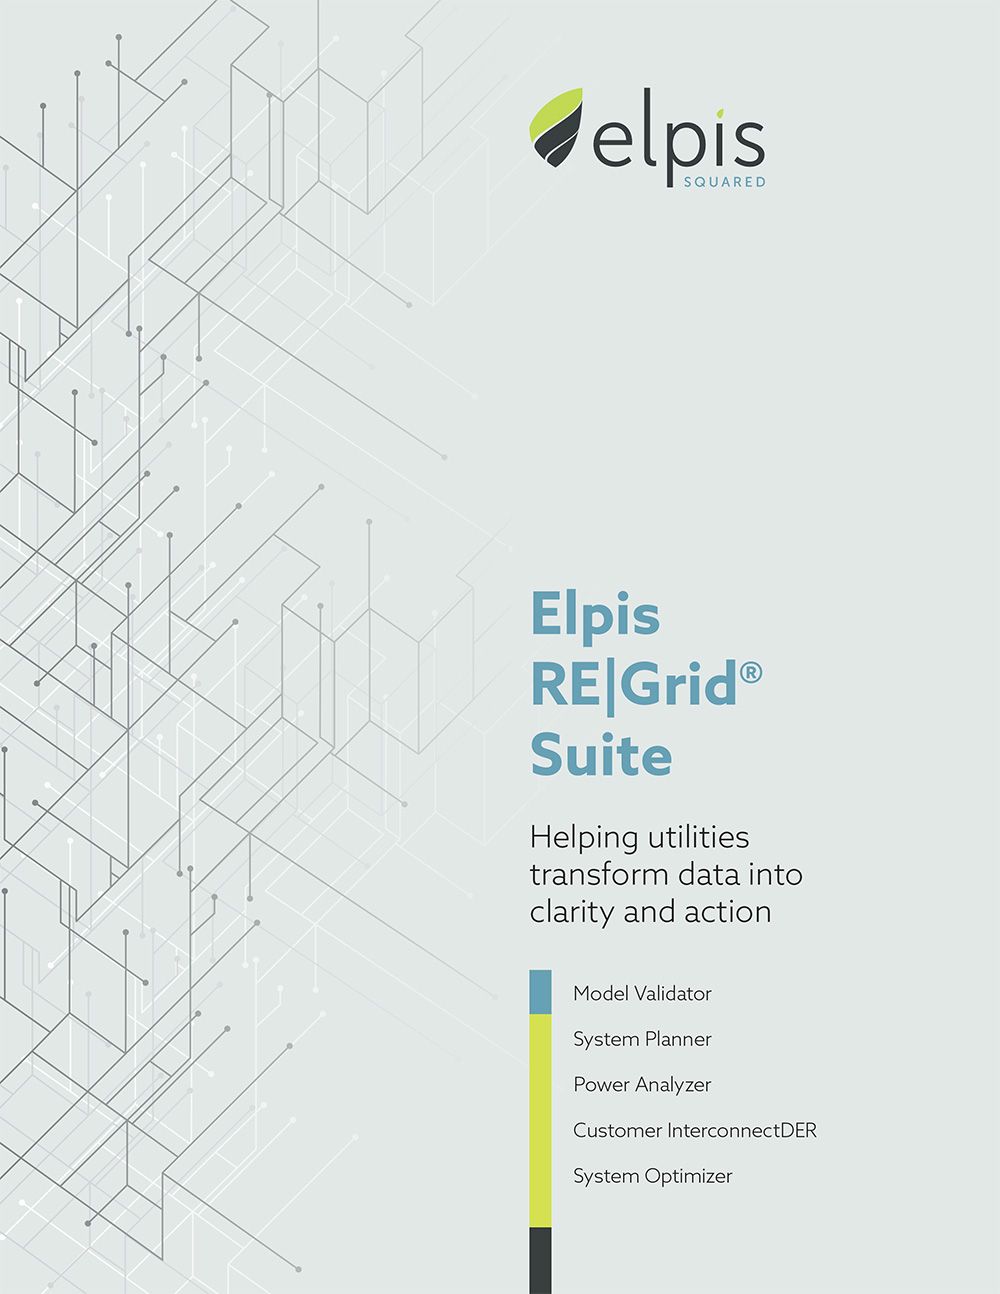 Elpis RE|Grid Suite brochure cover image